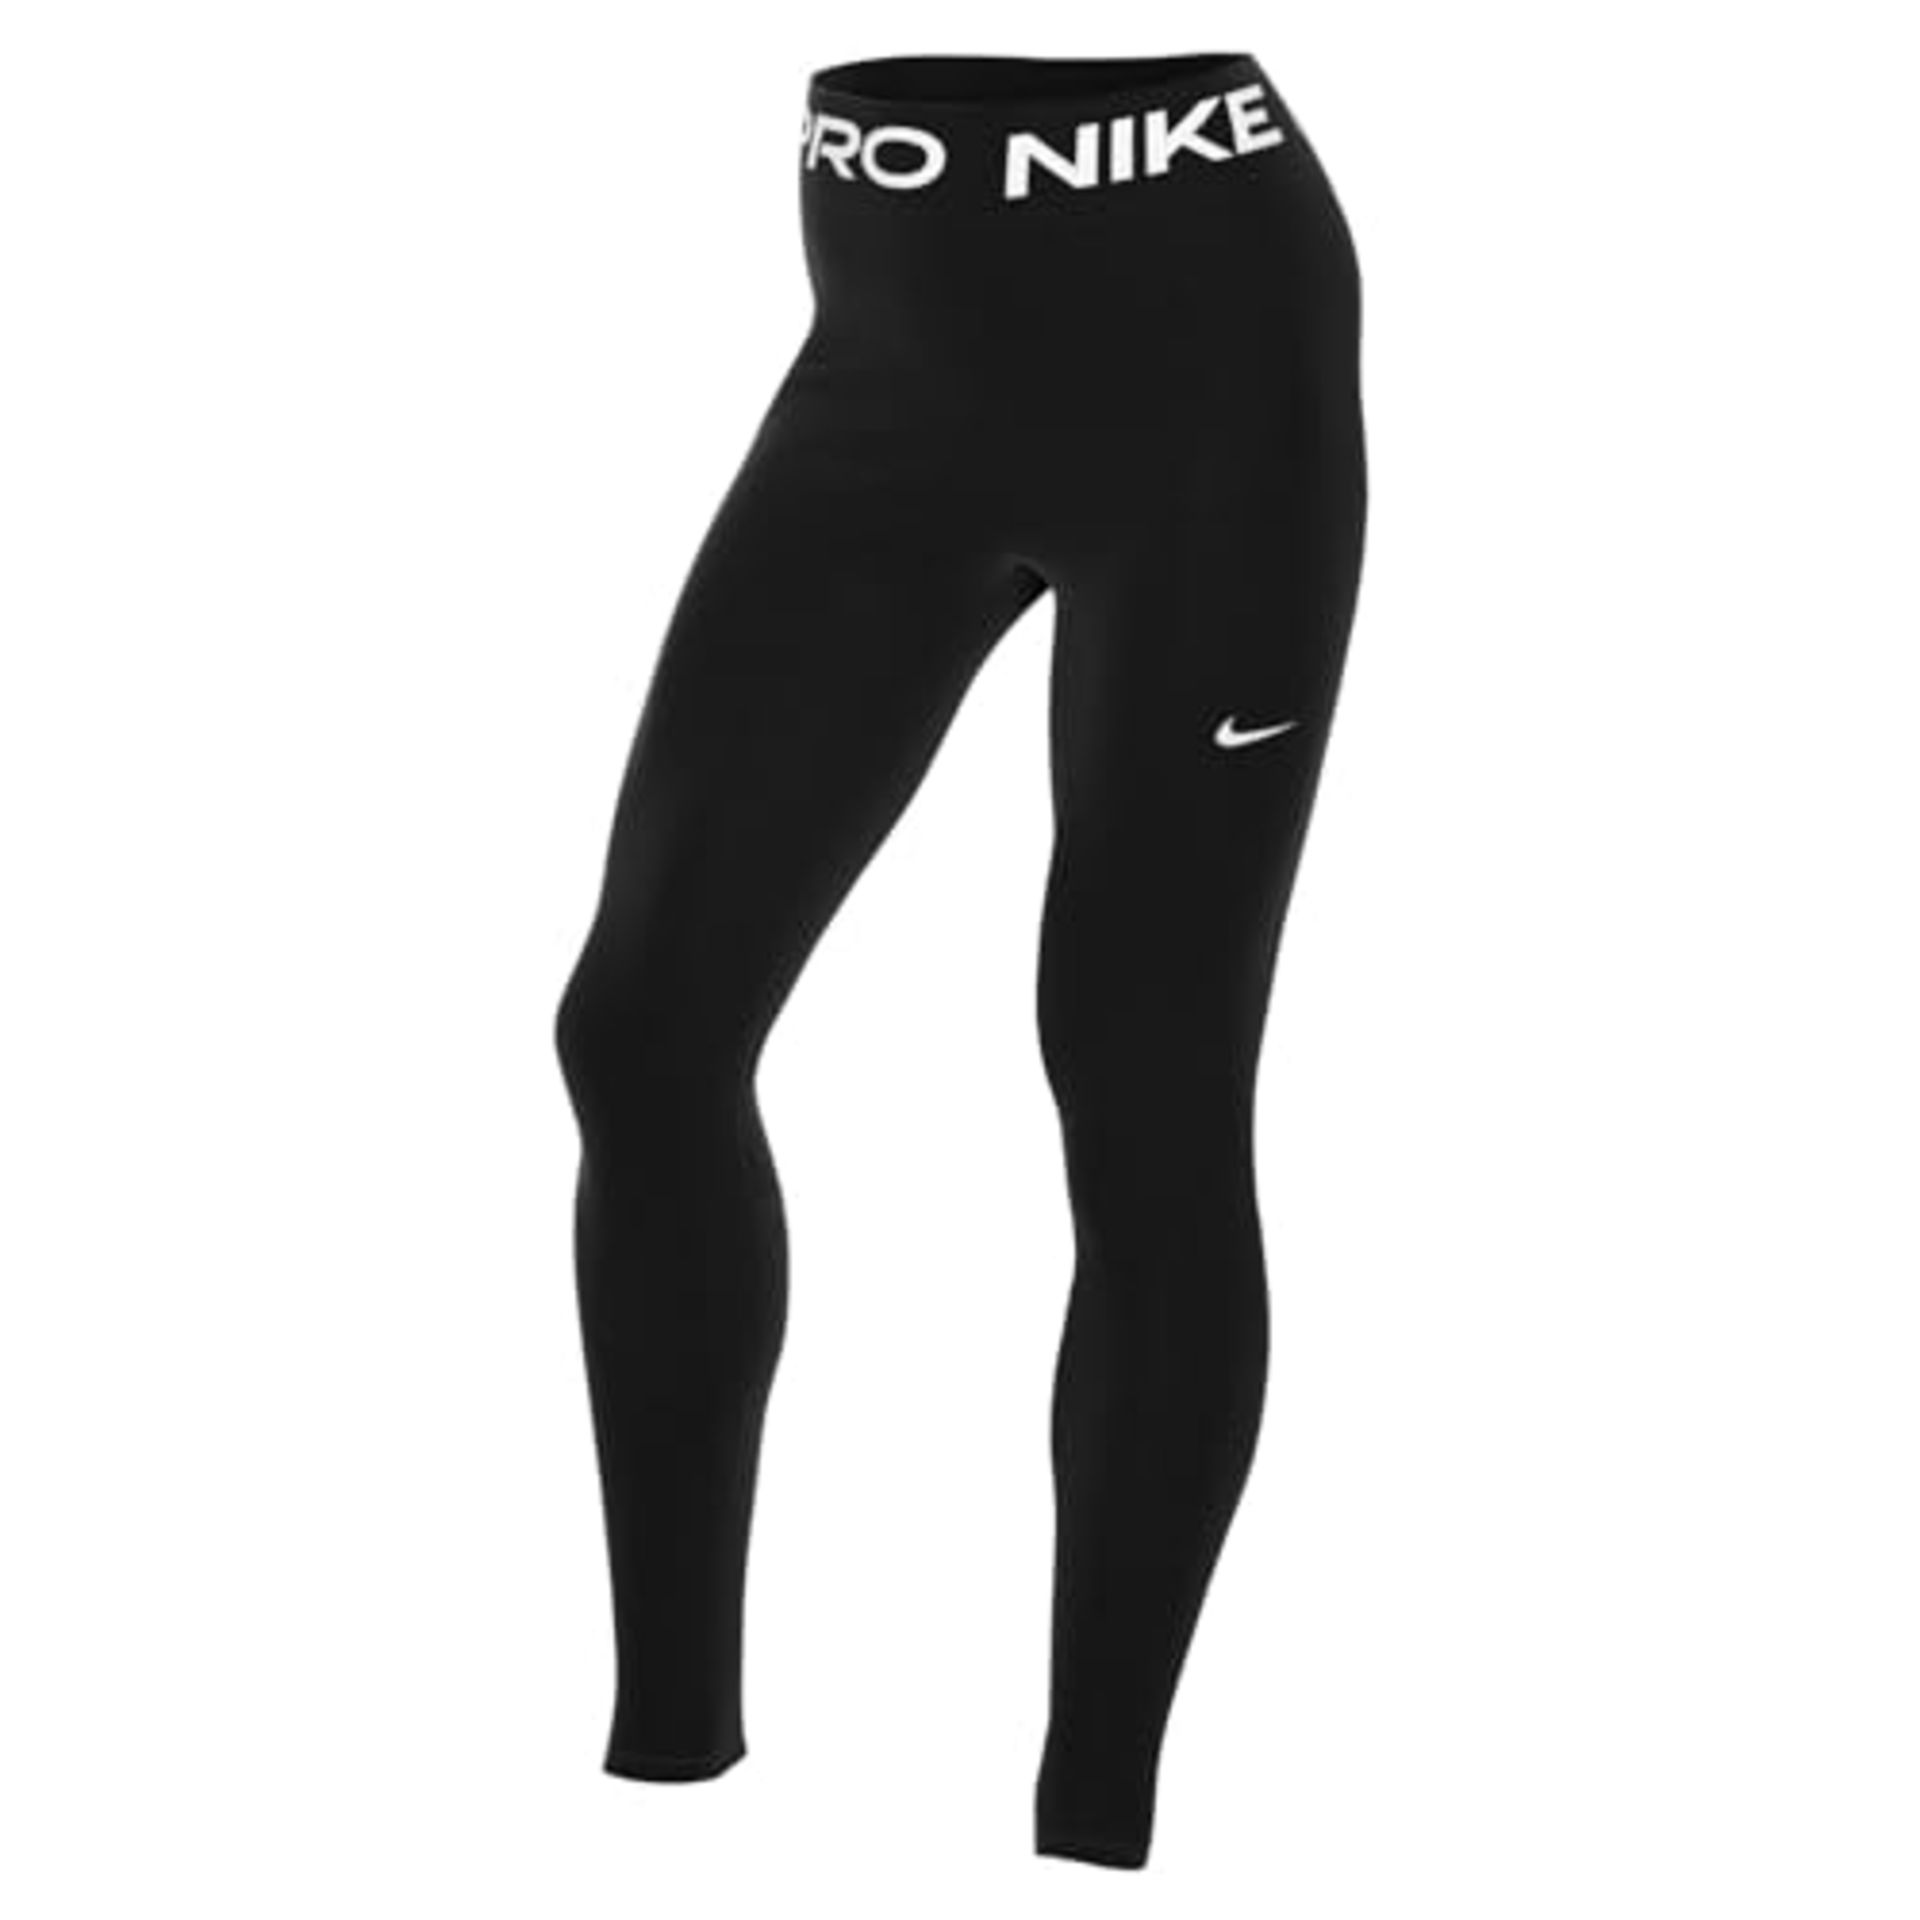 Nike Women's W Np 365 Tights, Black/White, M EU